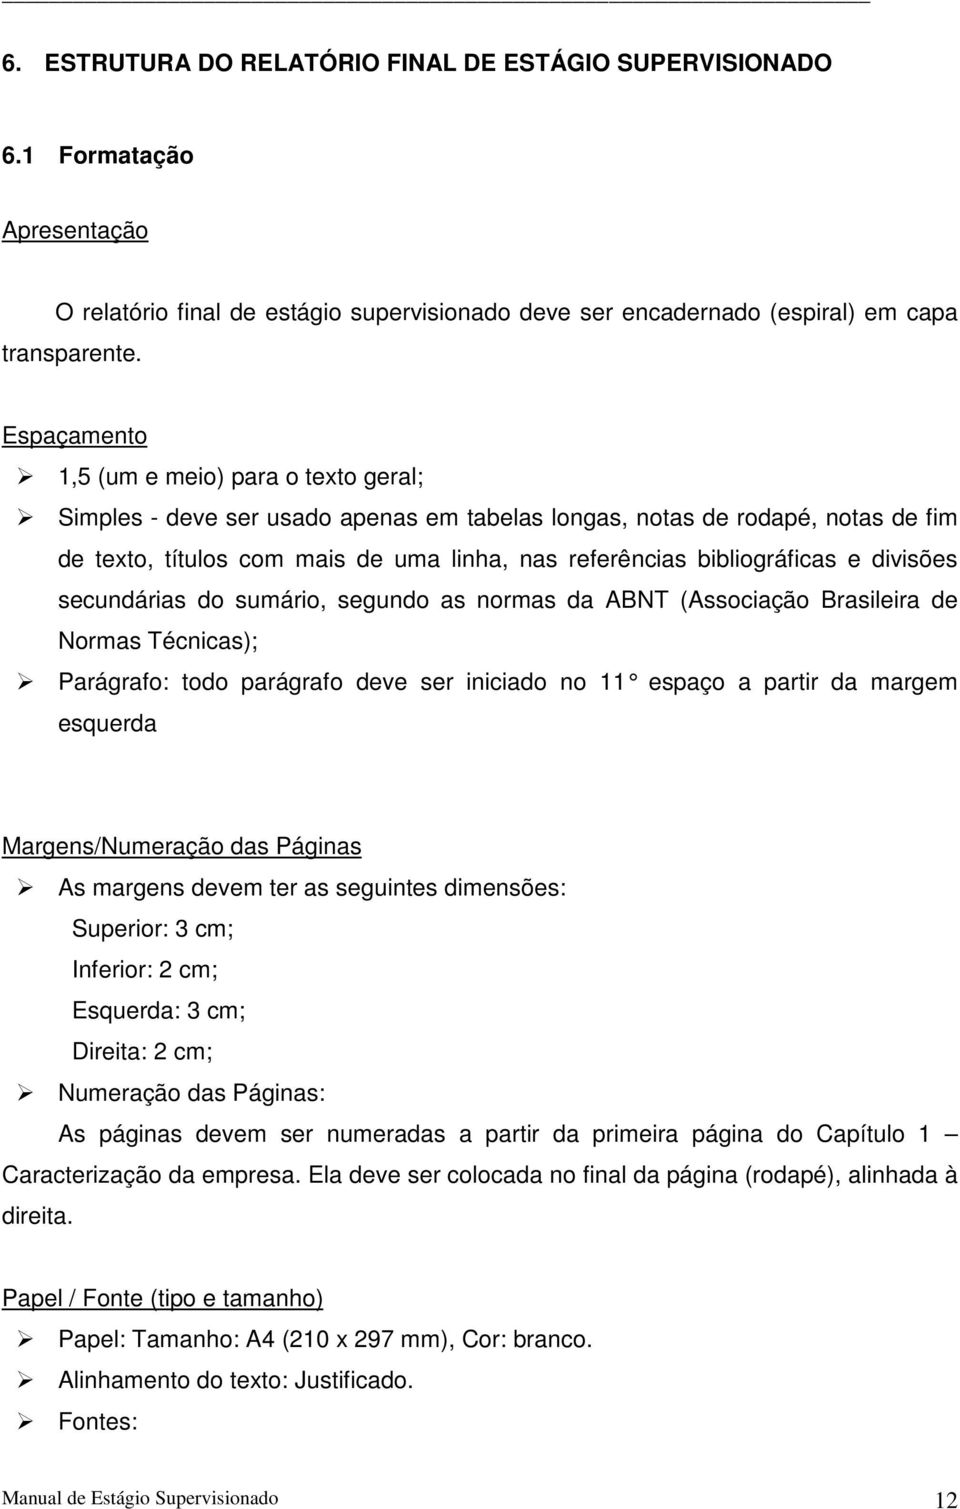 bibliográficas e divisões secundárias do sumário, segundo as normas da ABNT (Associação Brasileira de Normas Técnicas); Parágrafo: todo parágrafo deve ser iniciado no 11 espaço a partir da margem